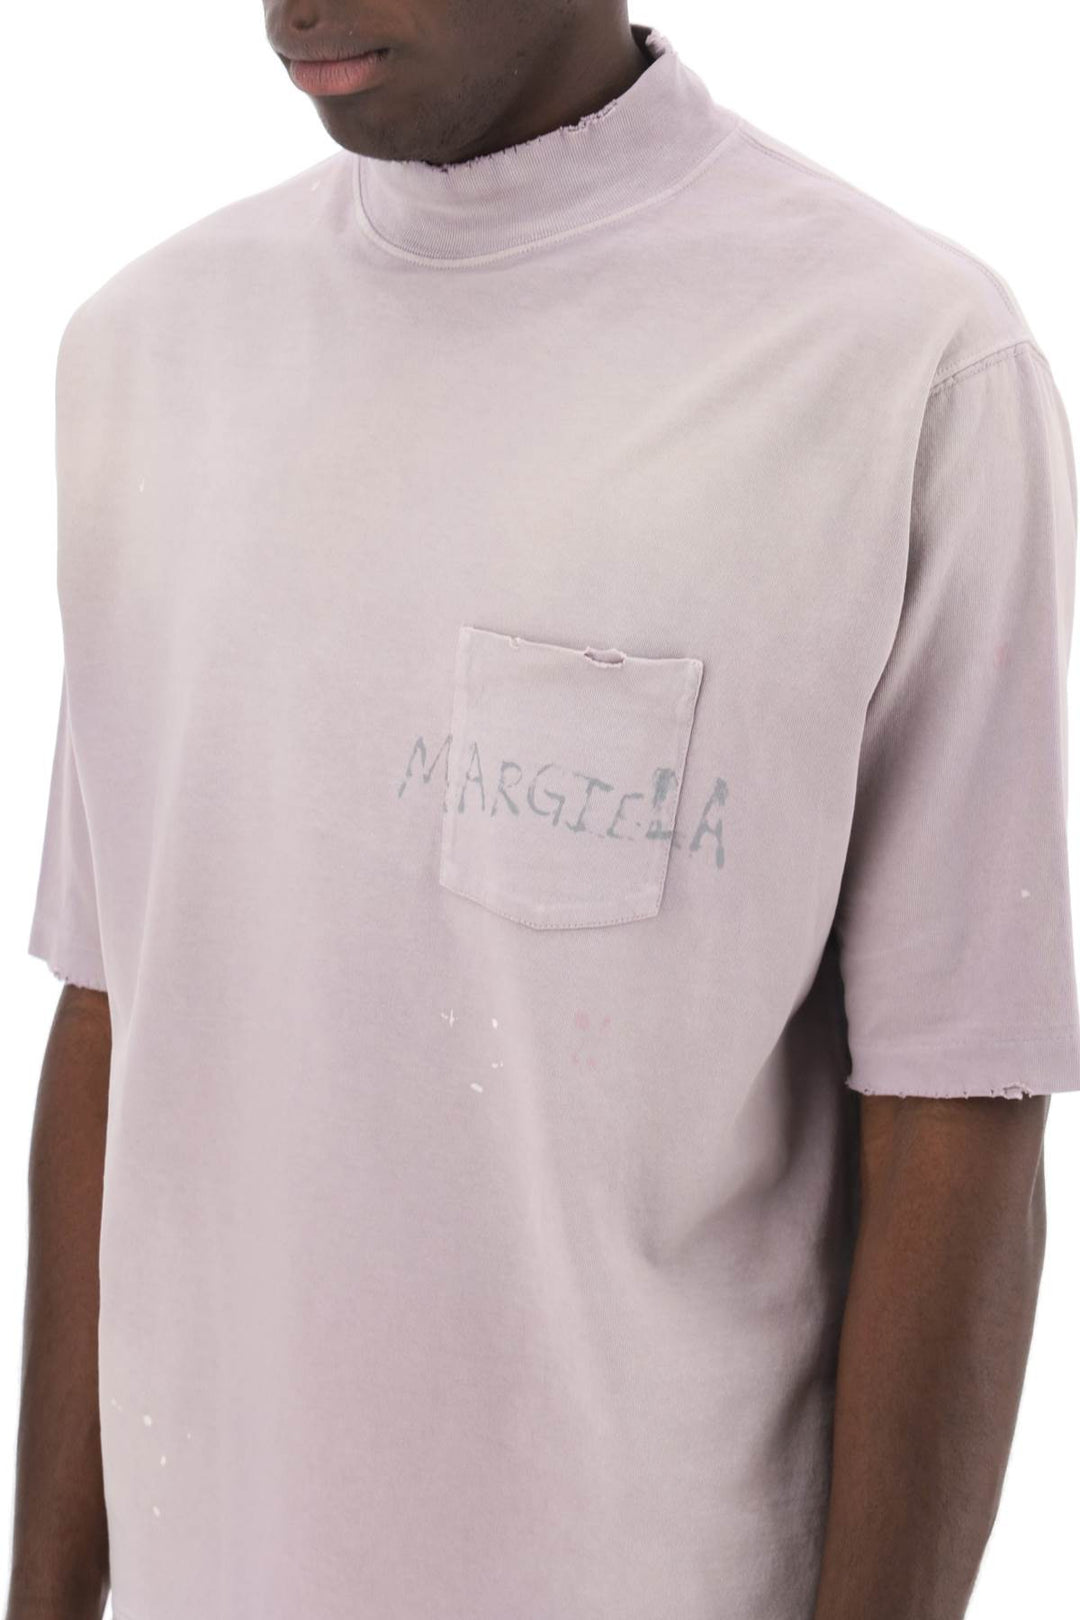 Maison Margiela Handwritten Logo T Shirt With Written Text   Viola